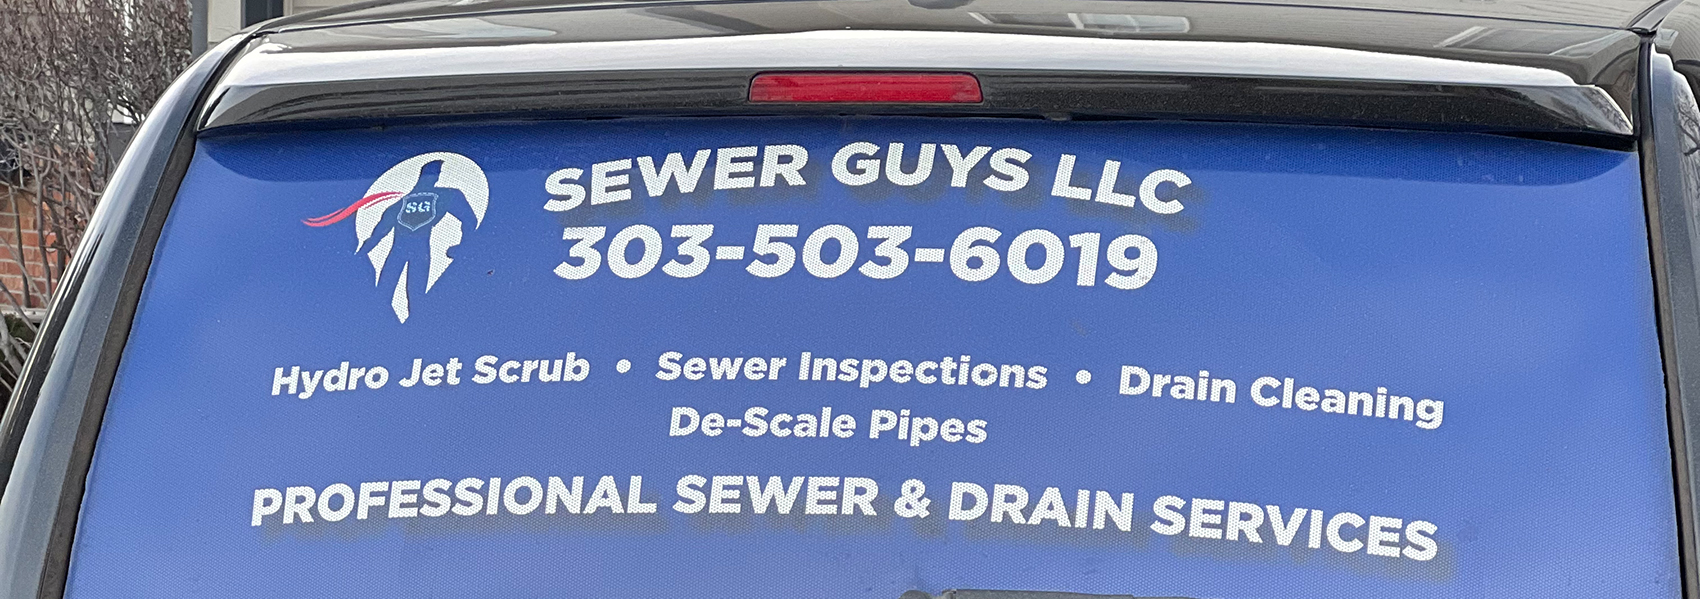 denver sewer service